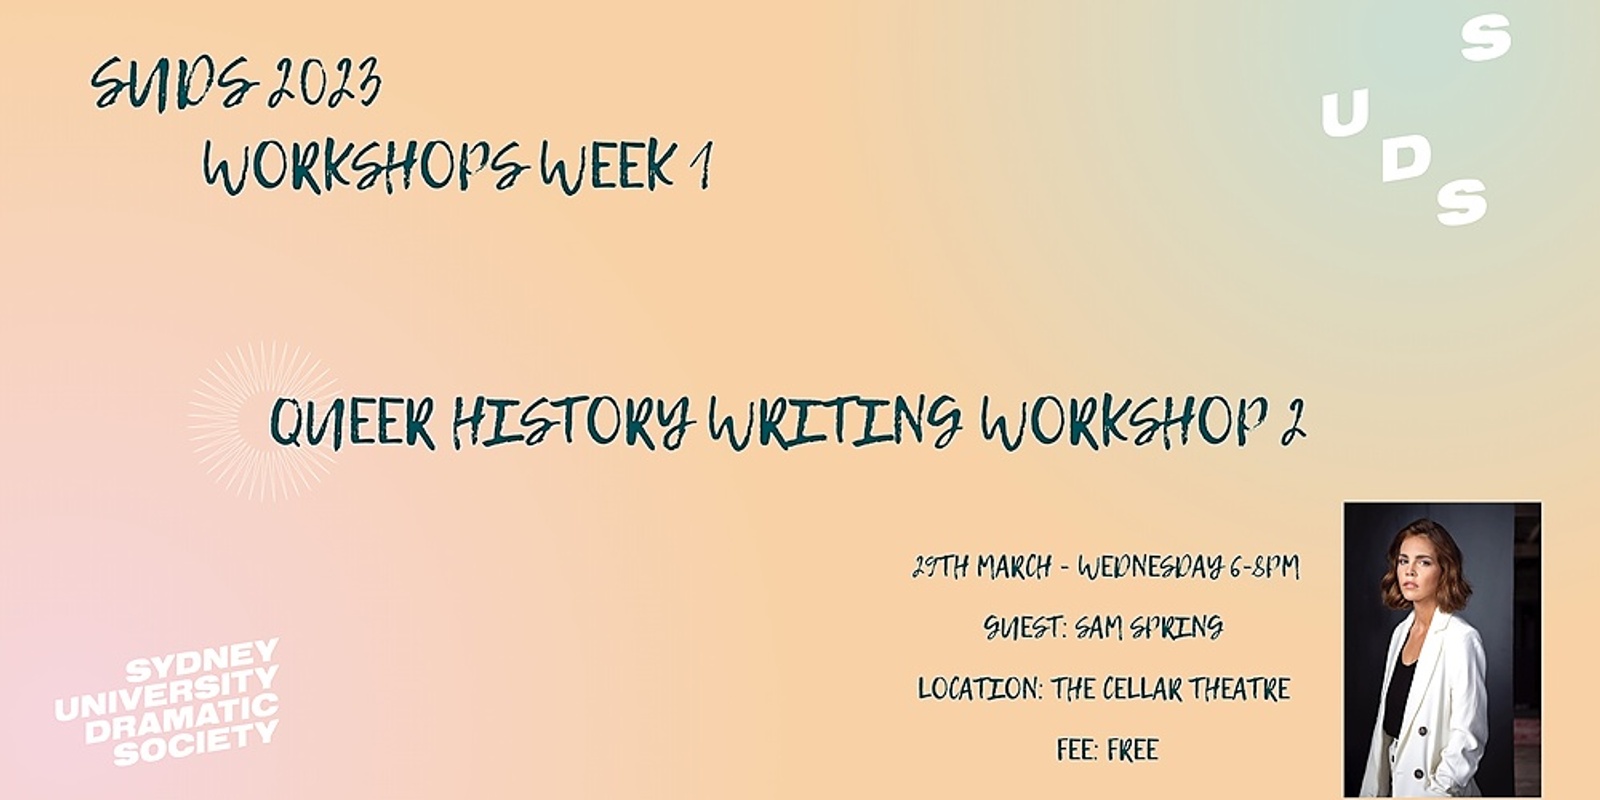 SUDS Workshops Week: Queer History Writing Workshop 2